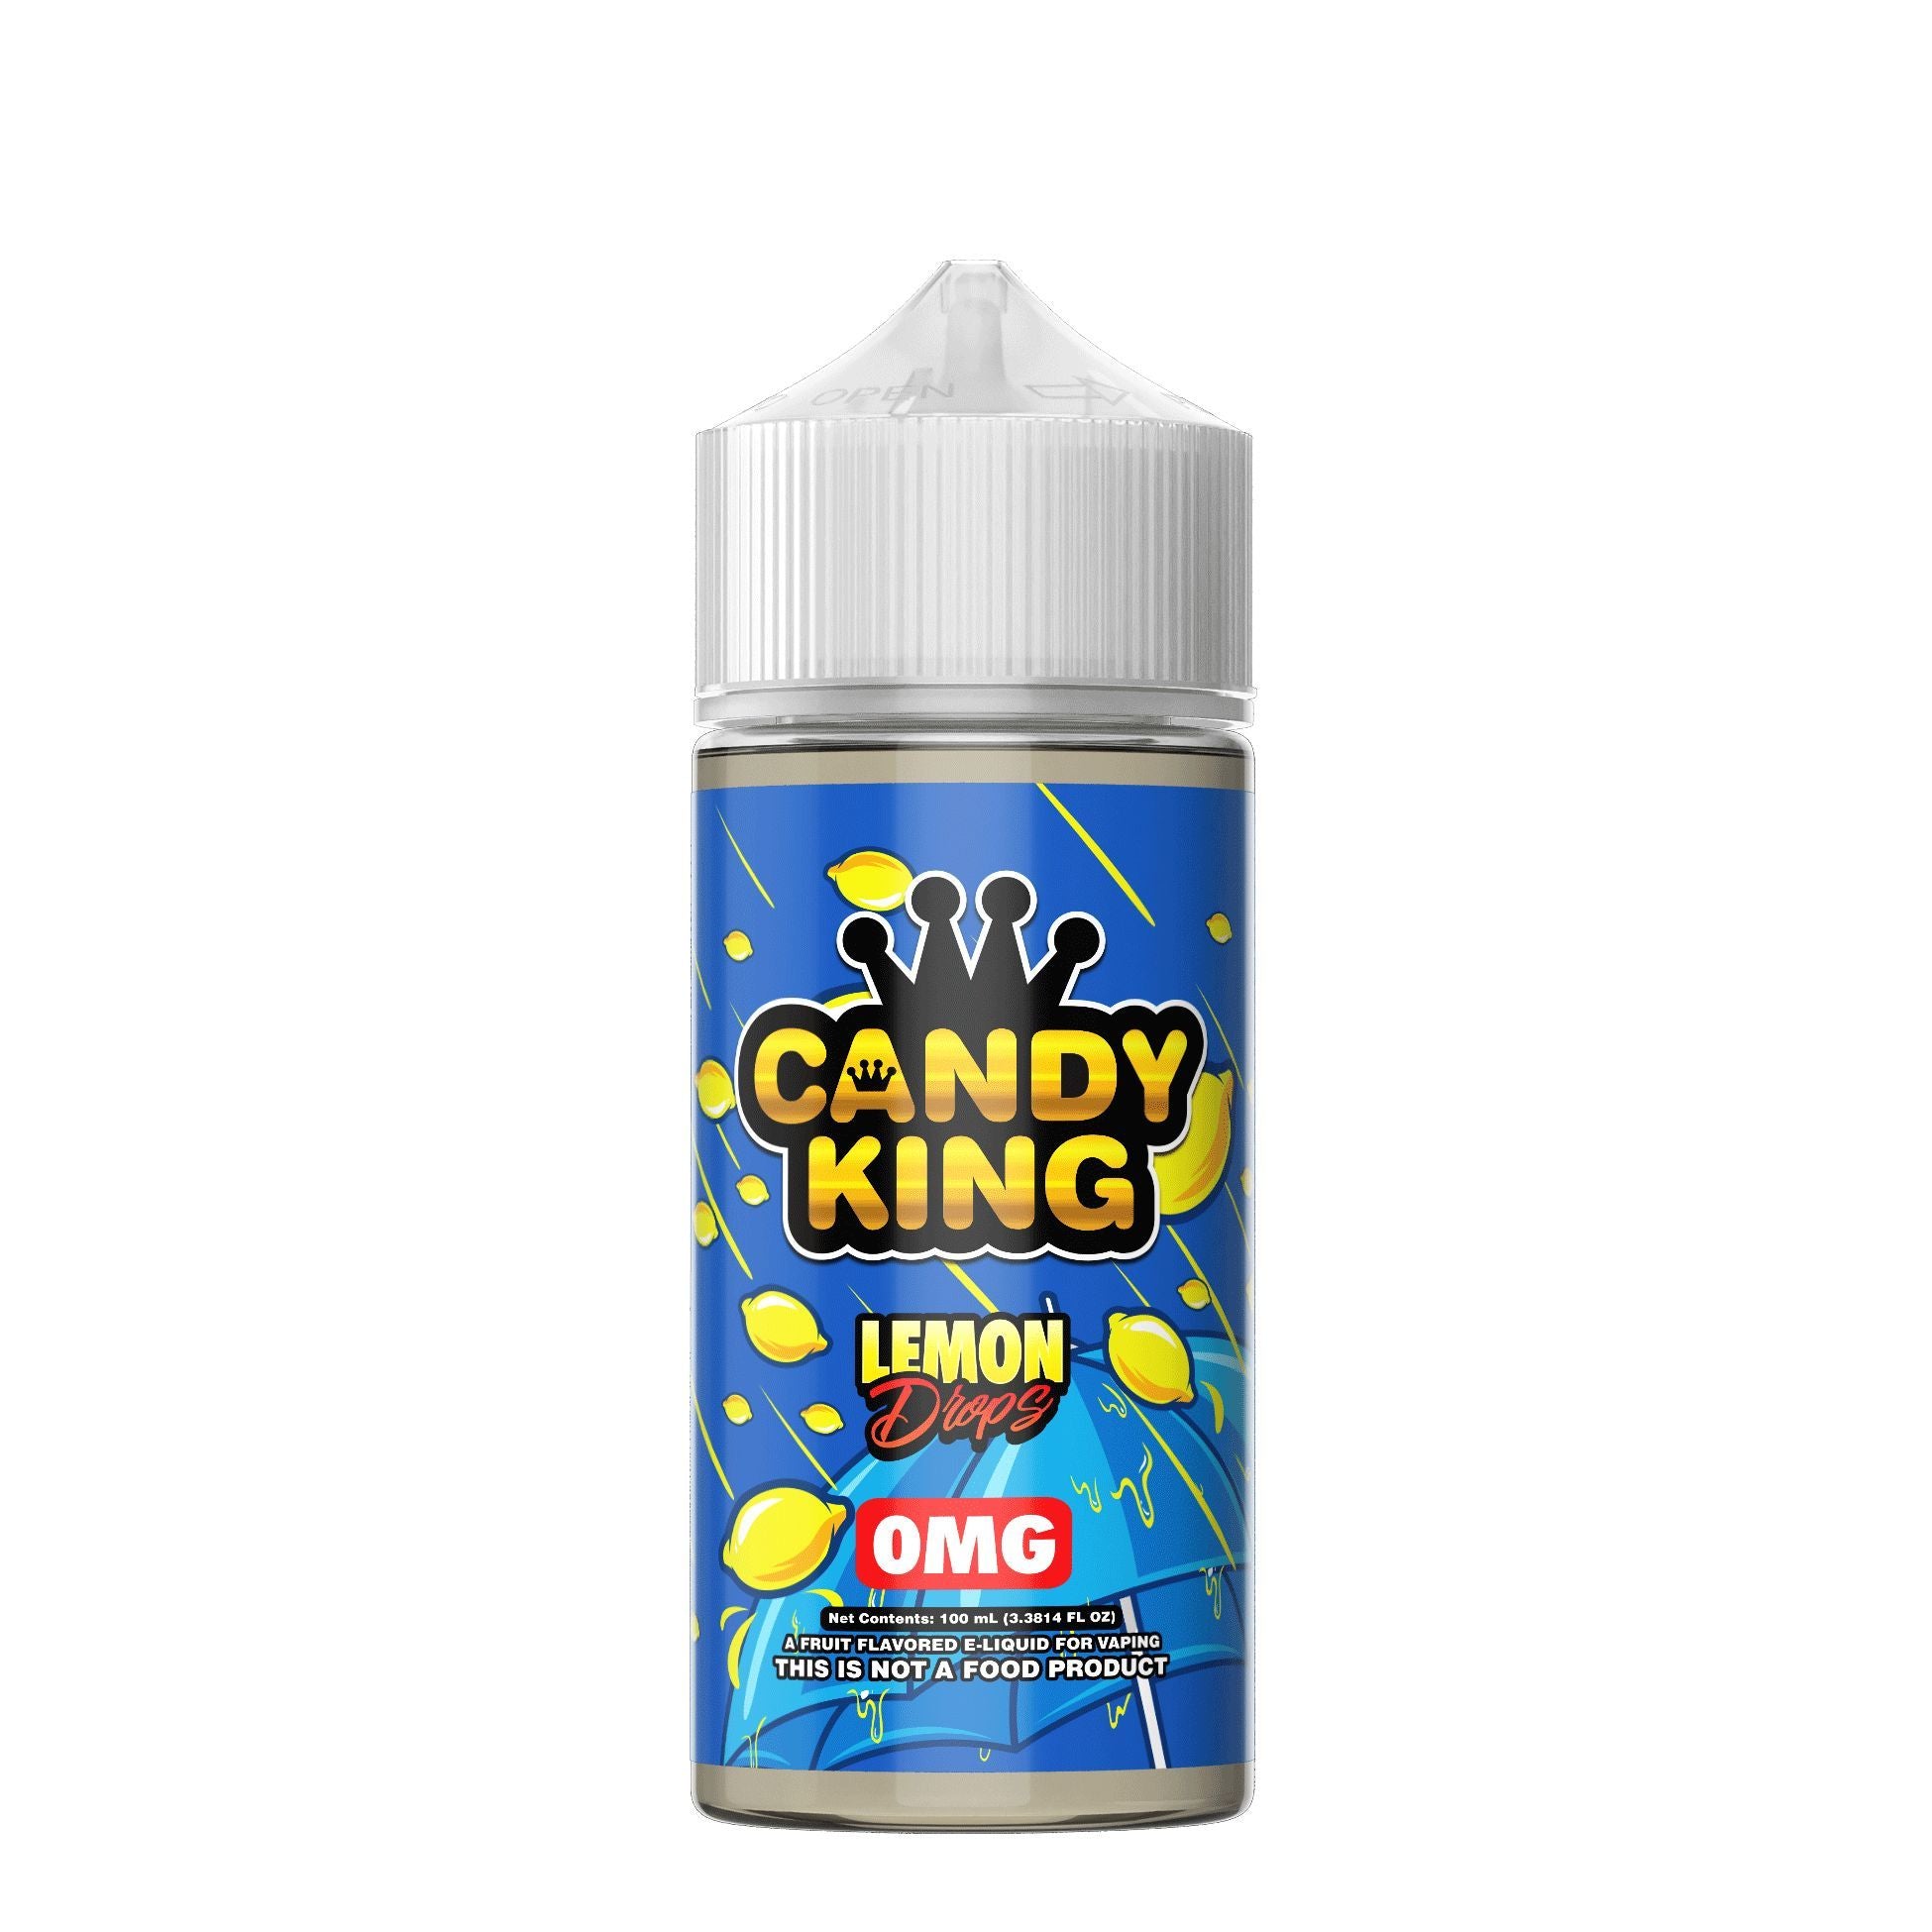 Candy king | 100ml | Lemon Drops | Wholesale